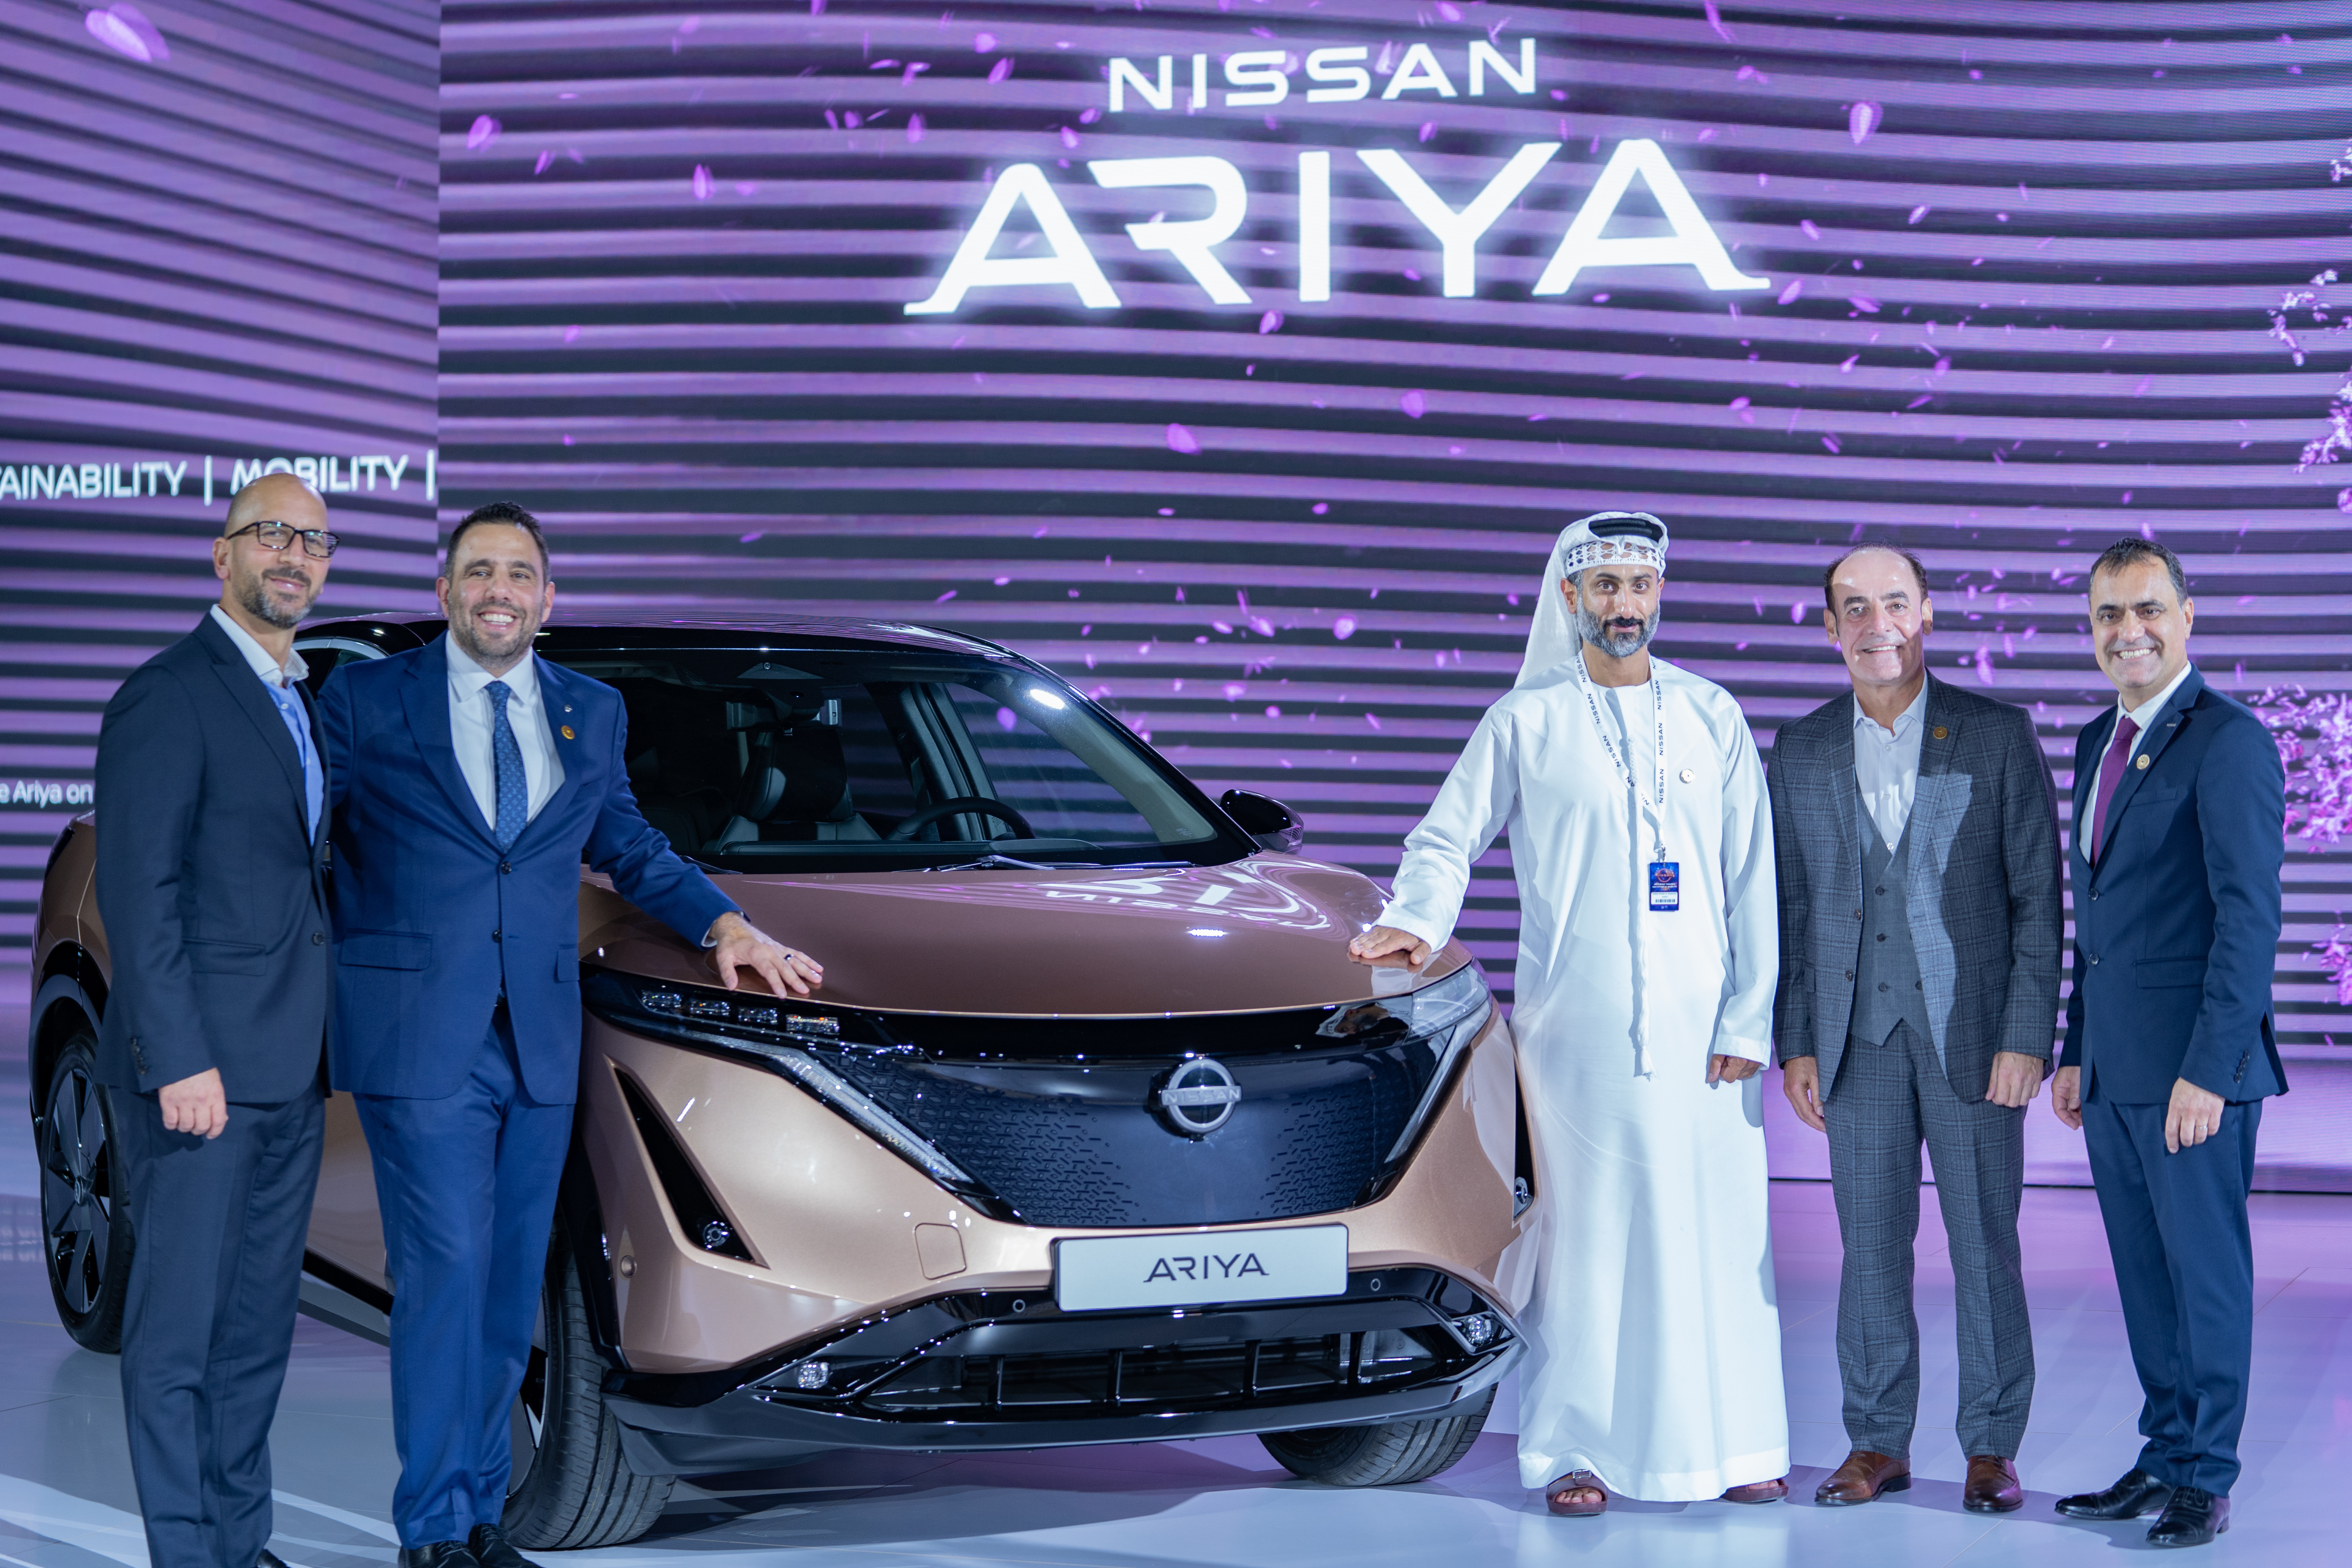 نيسان تبهر زوّار إكسبو 2020 دبي بالعرض الإقليمي الأول لسيارة أريا الكهربائية كلّياً